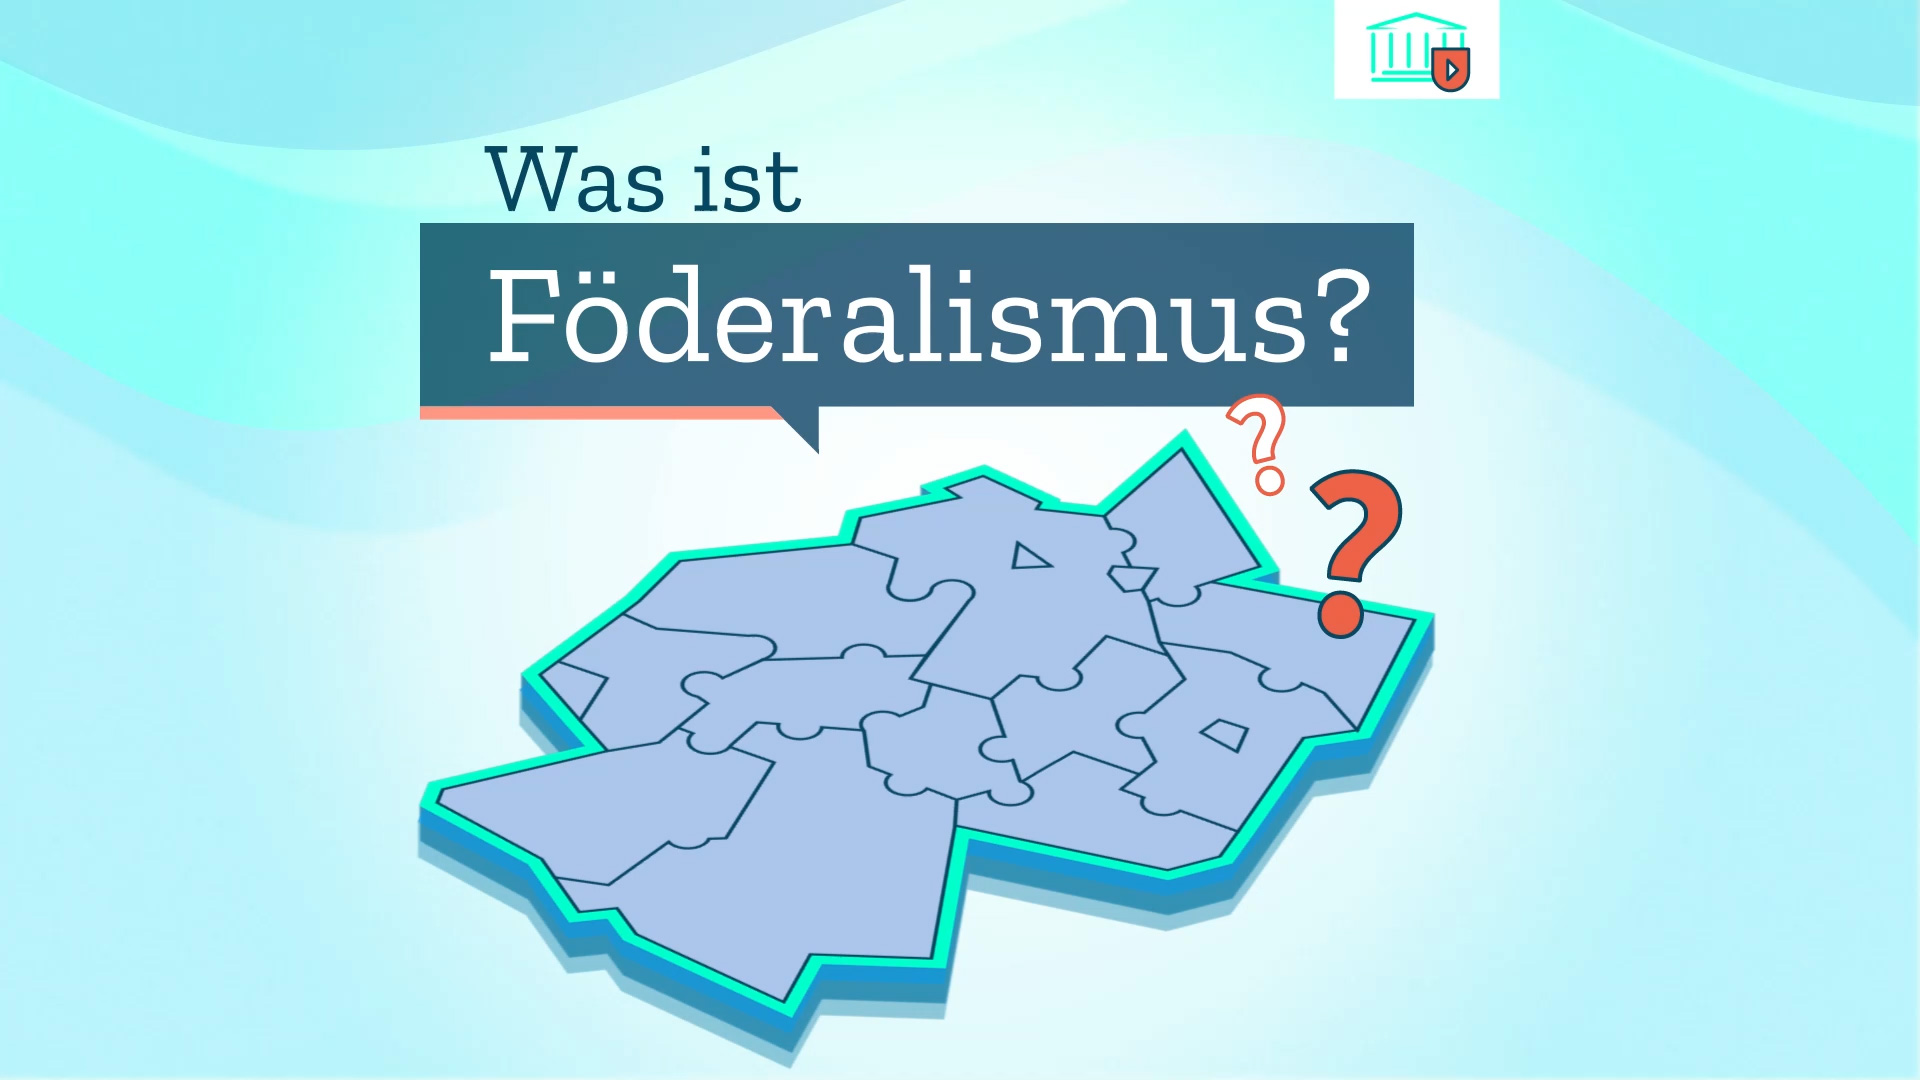 Startbild mit Text: Was ist Föderalismus?